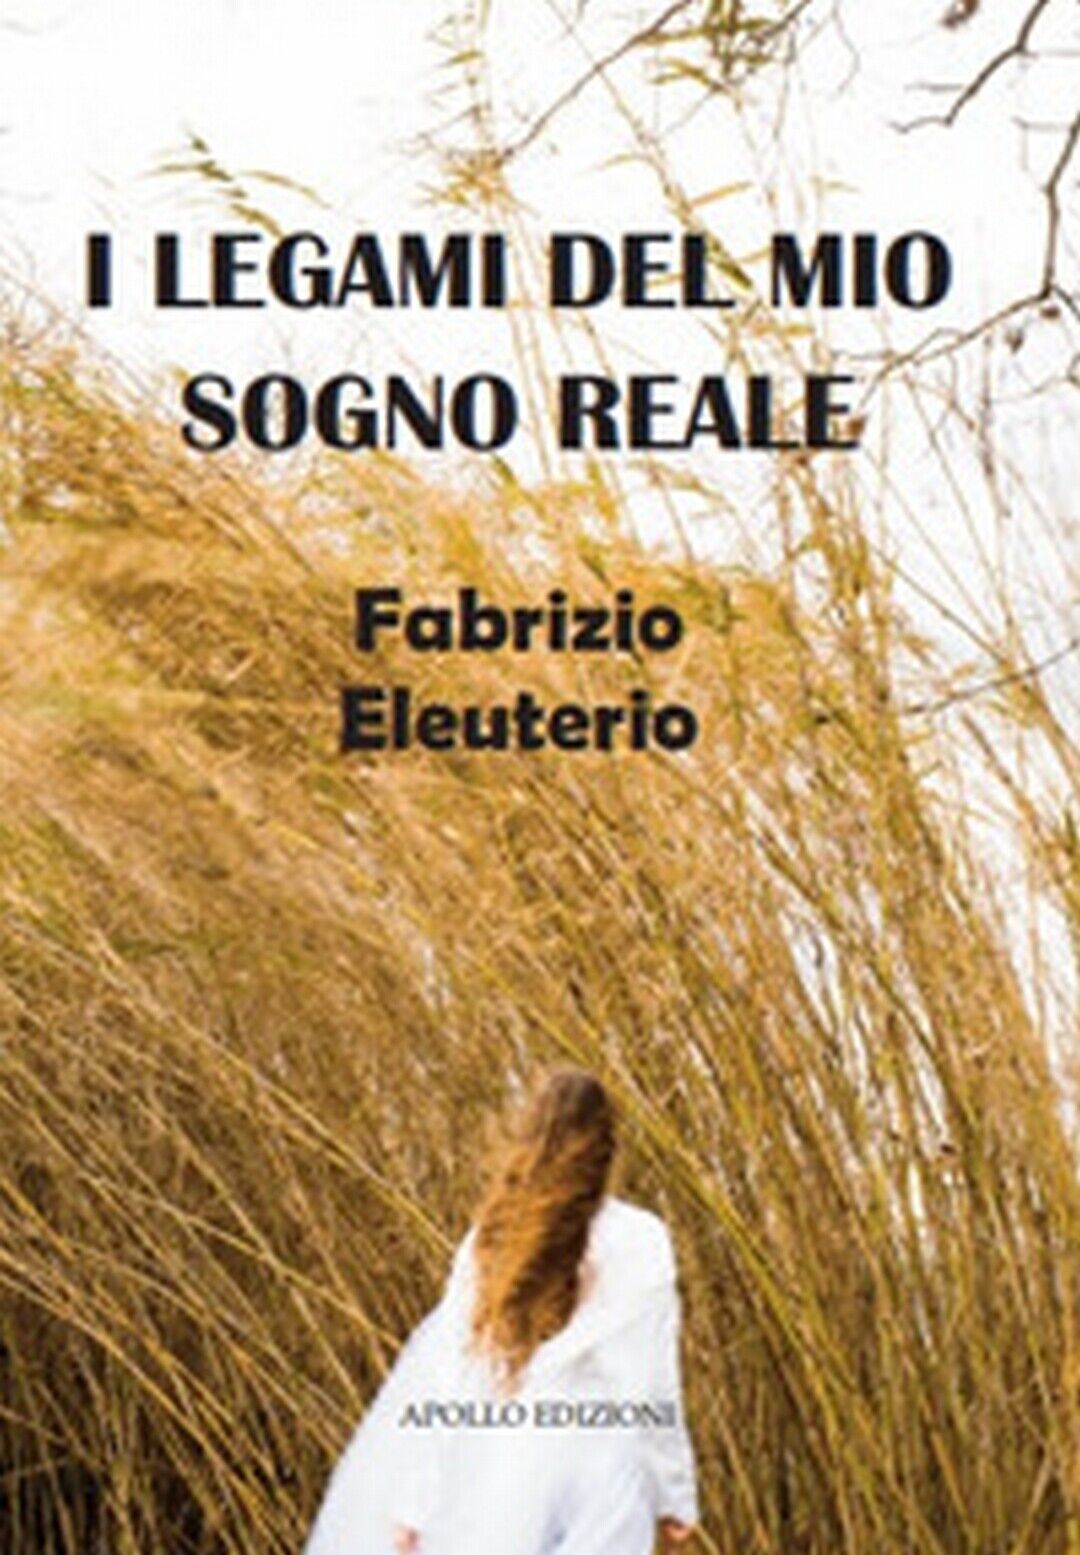 I legami del mio sogno reale  di Fabrizio Eleuterio,  2019,  Apollo Edizioni